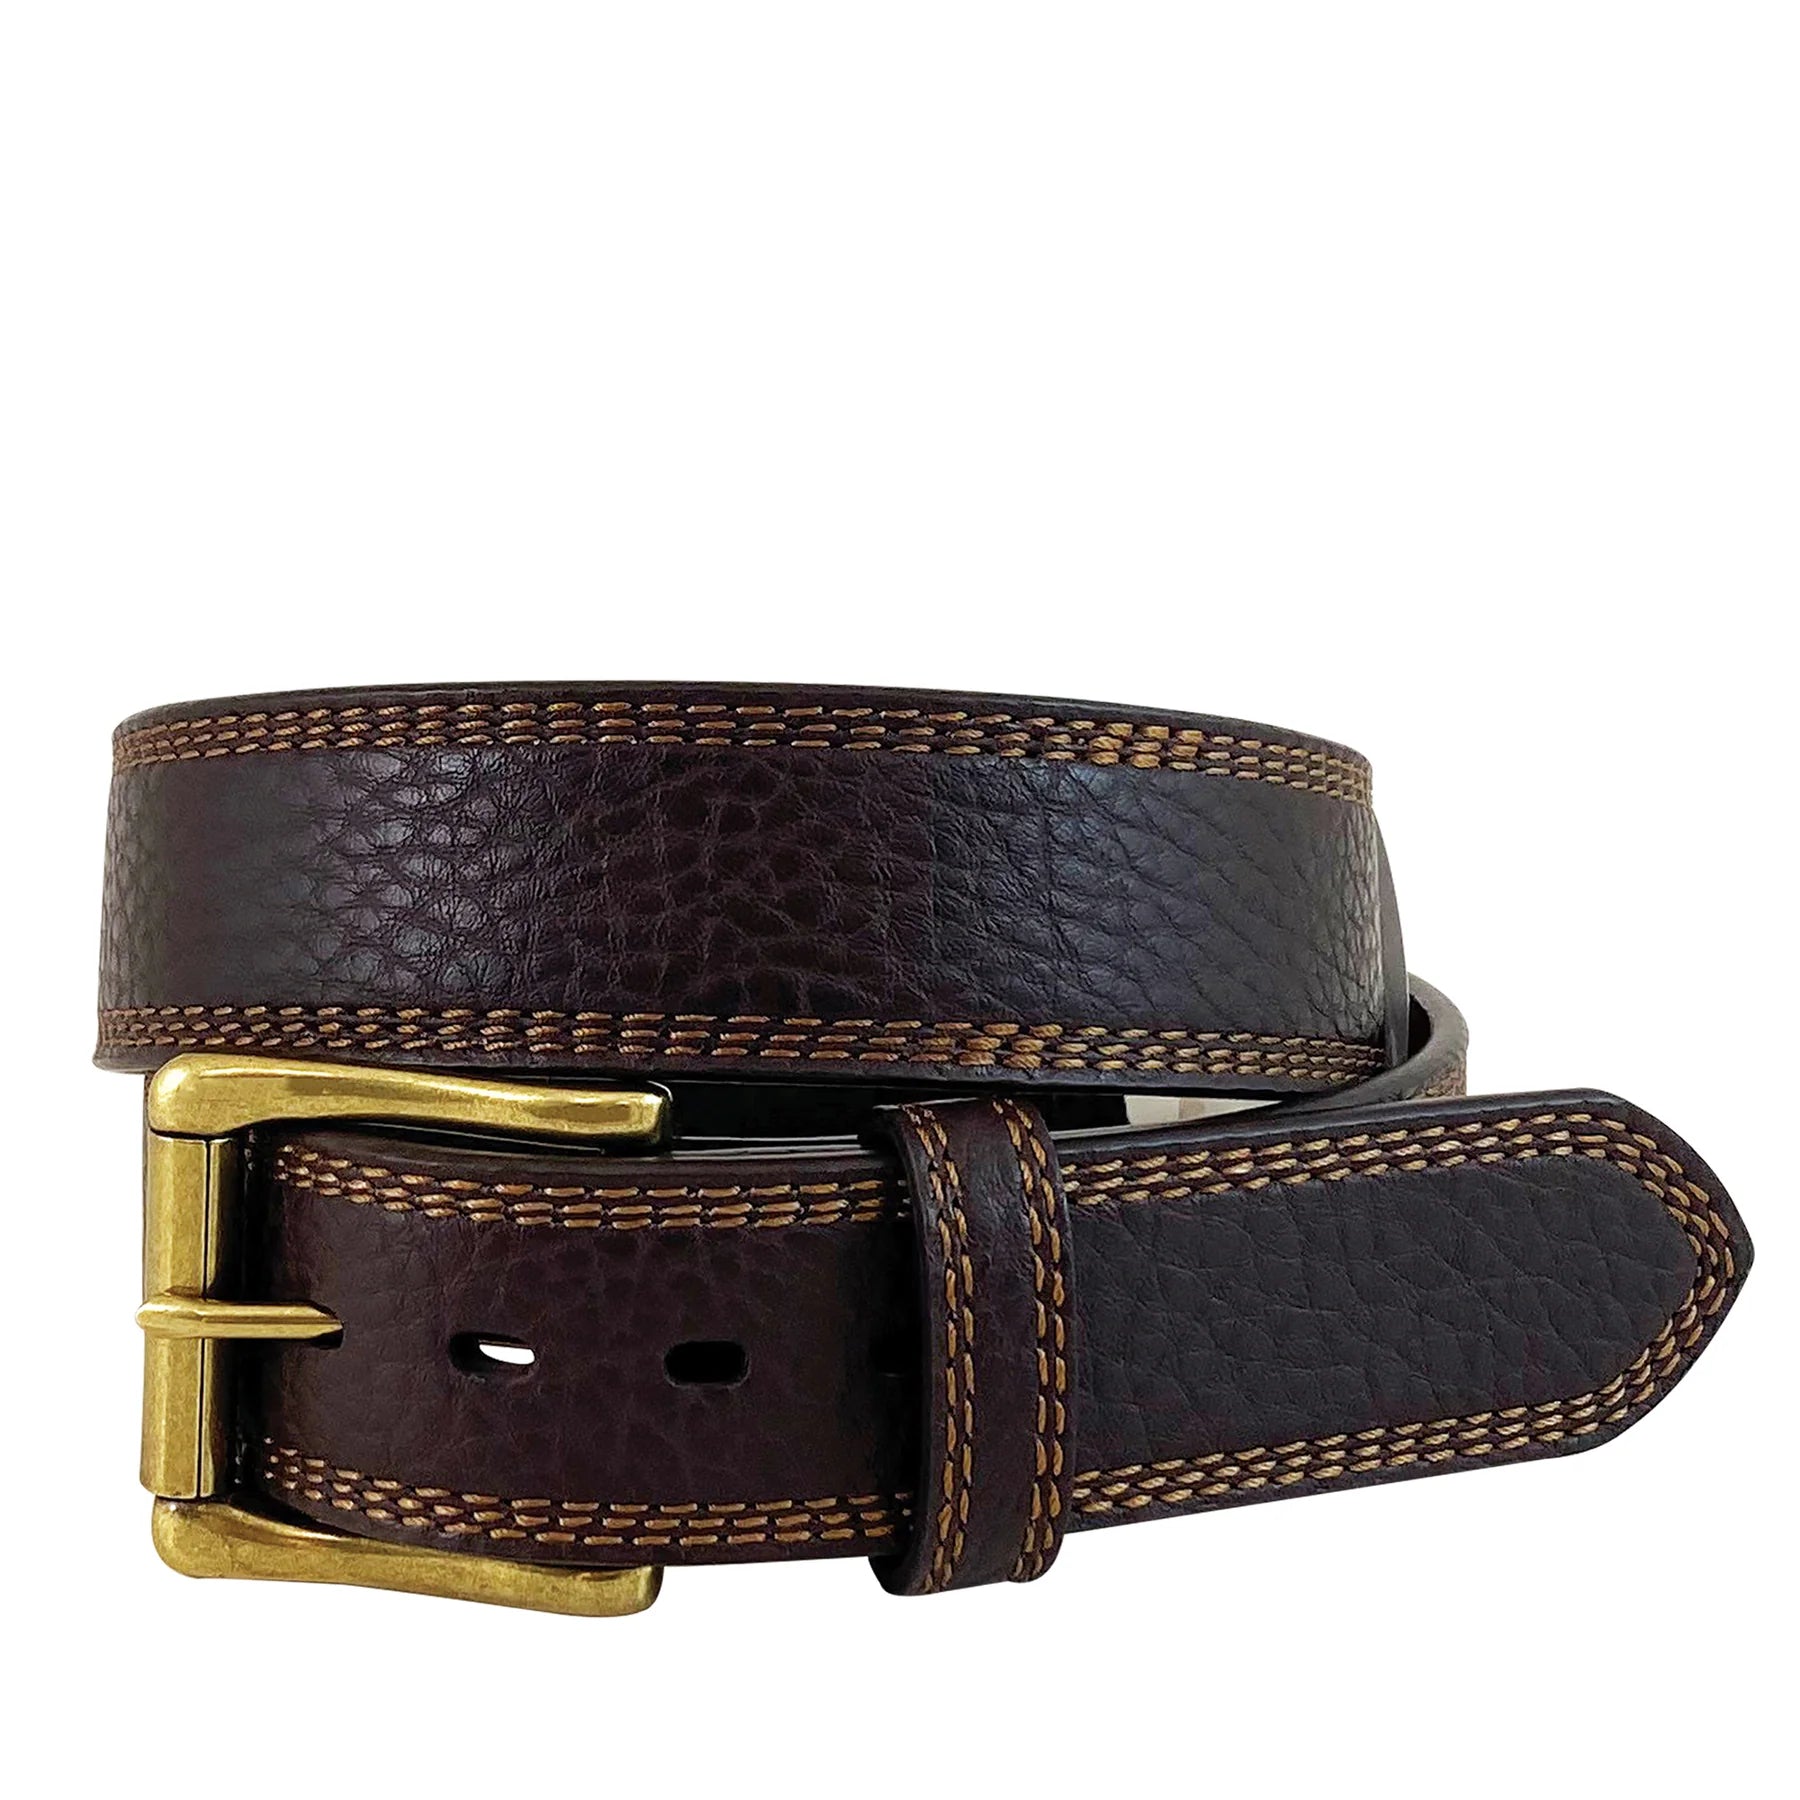 Roper Men's Belt - Dark Brown